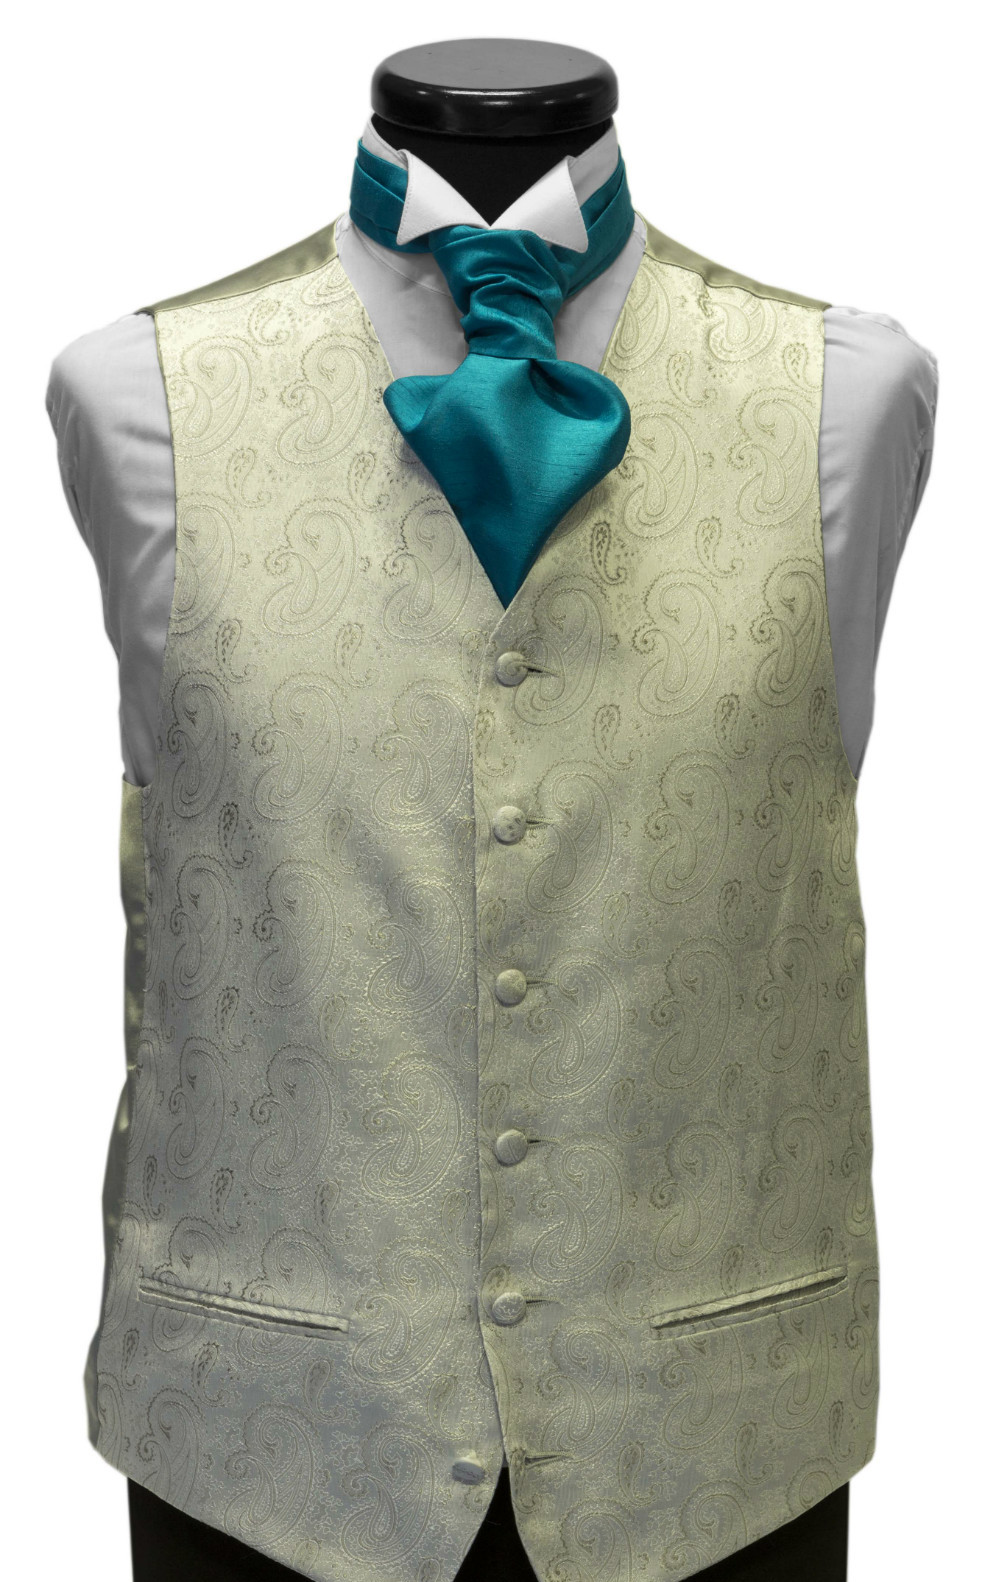 Ivory paisley waistcoat with turquoise cravat